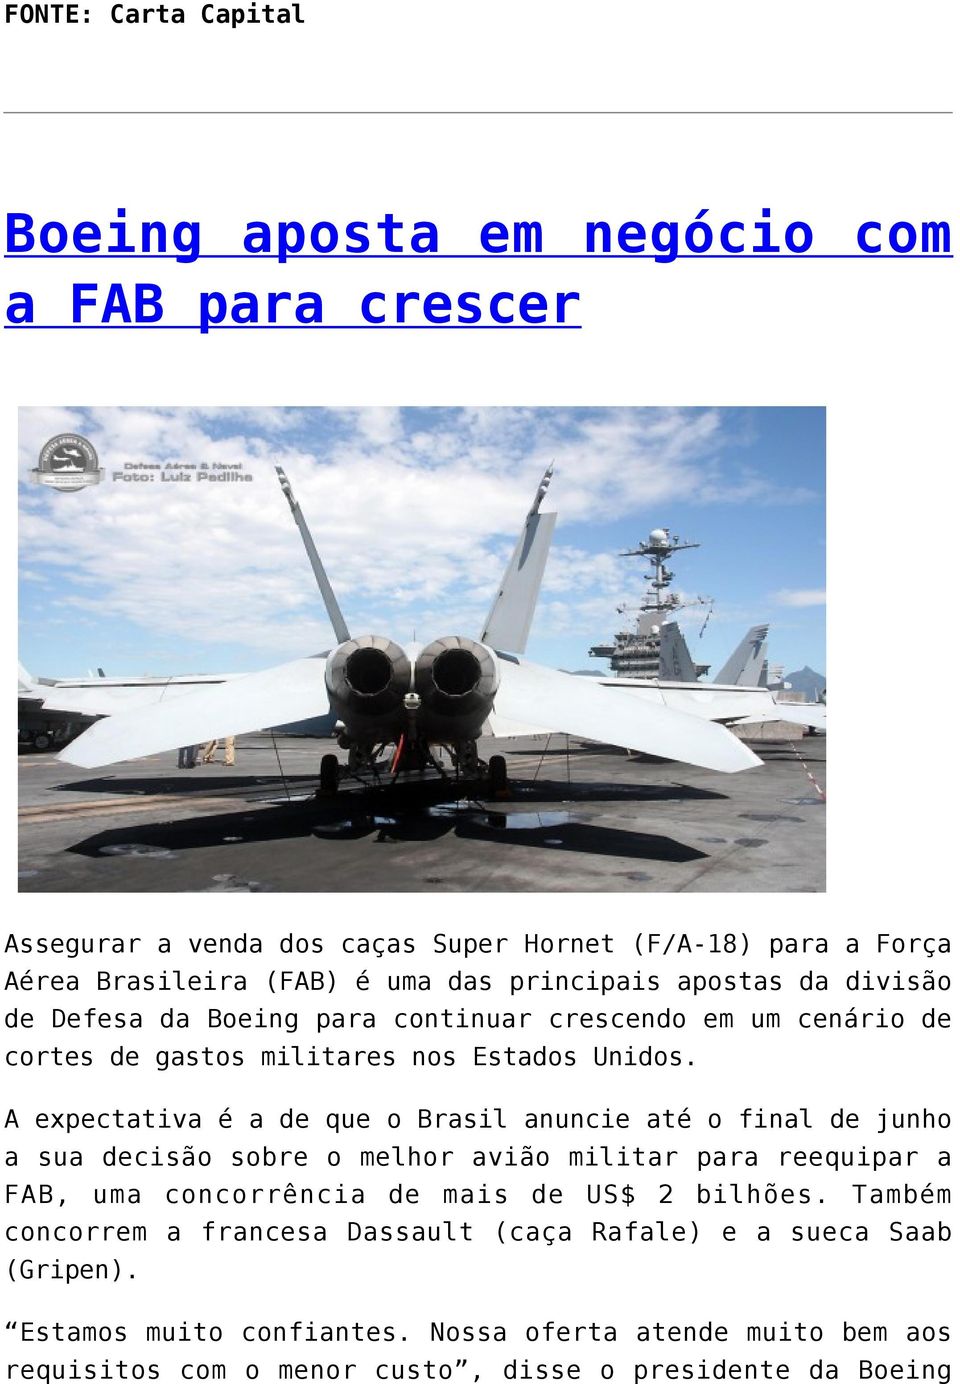 A expectativa é a de que o Brasil anuncie até o final de junho a sua decisão sobre o melhor avião militar para reequipar a FAB, uma concorrência de mais de US$ 2